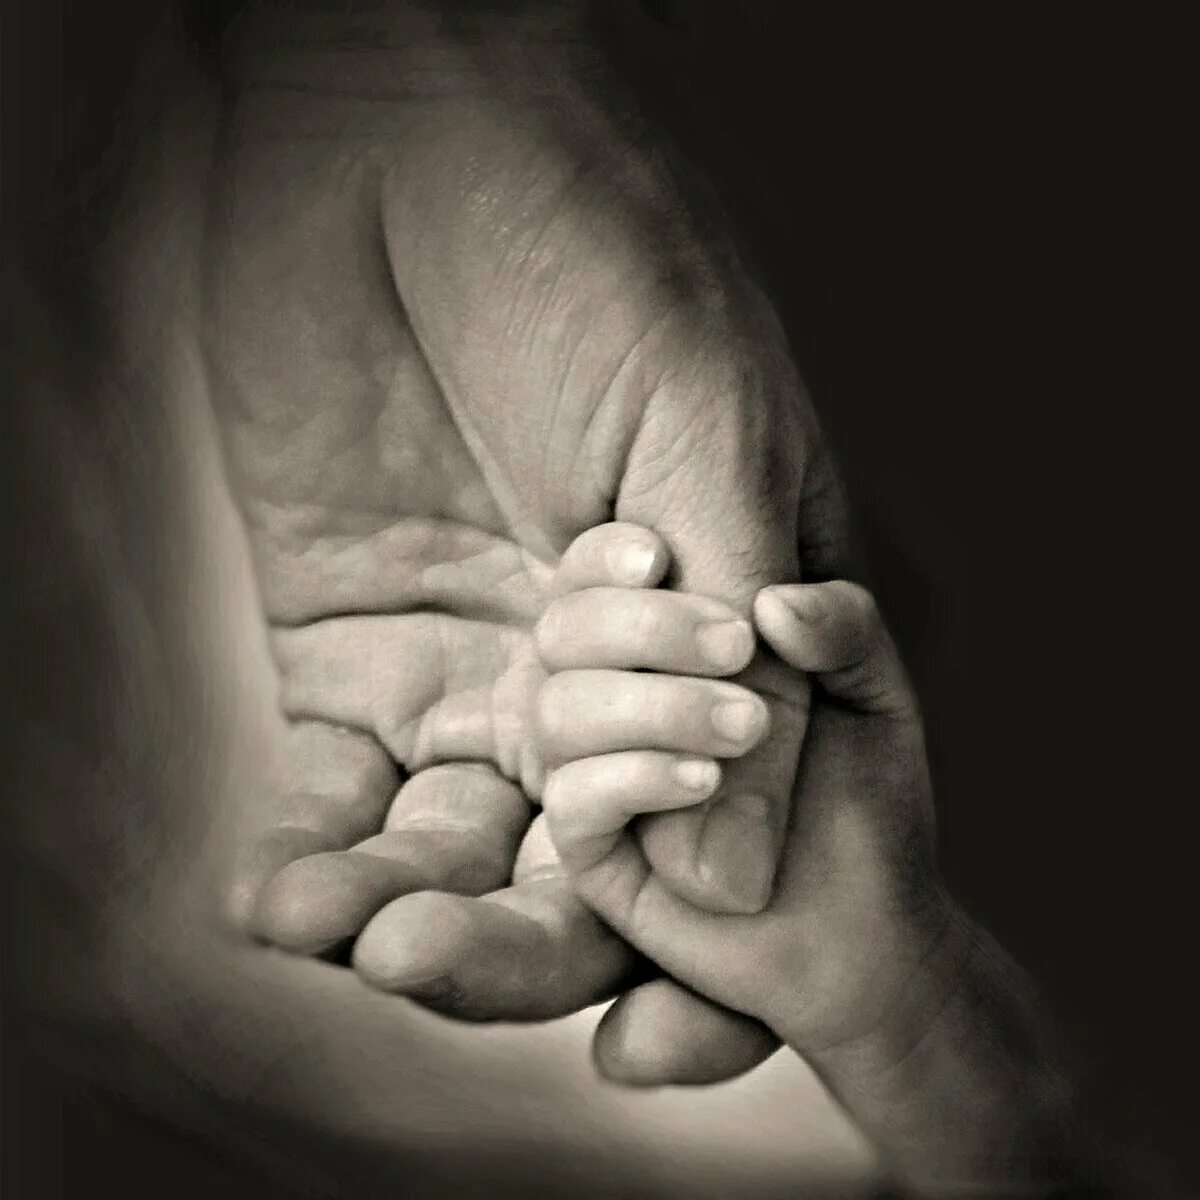 Бывший муж с ребенком на руках. Руки отца. Детская рука в руке. Мужская и детская рука. Рука отца и сына.